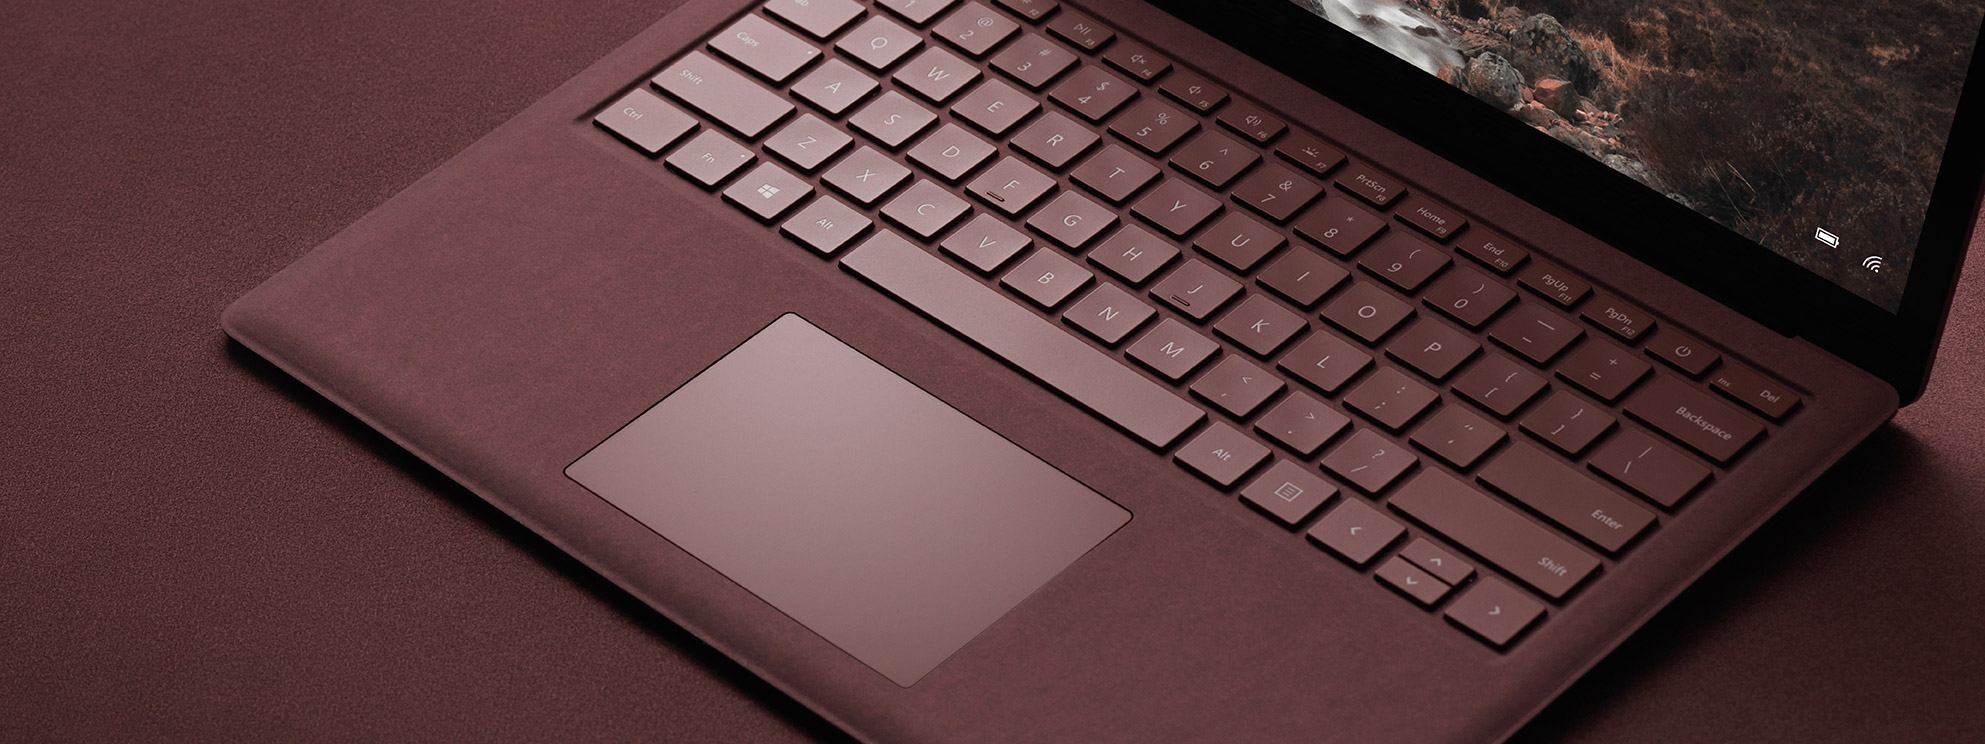 Lớp vải Alcantara trên Surface Laptop có thể chống nước sơ, và bạn sẽ phải chăm nó kĩ